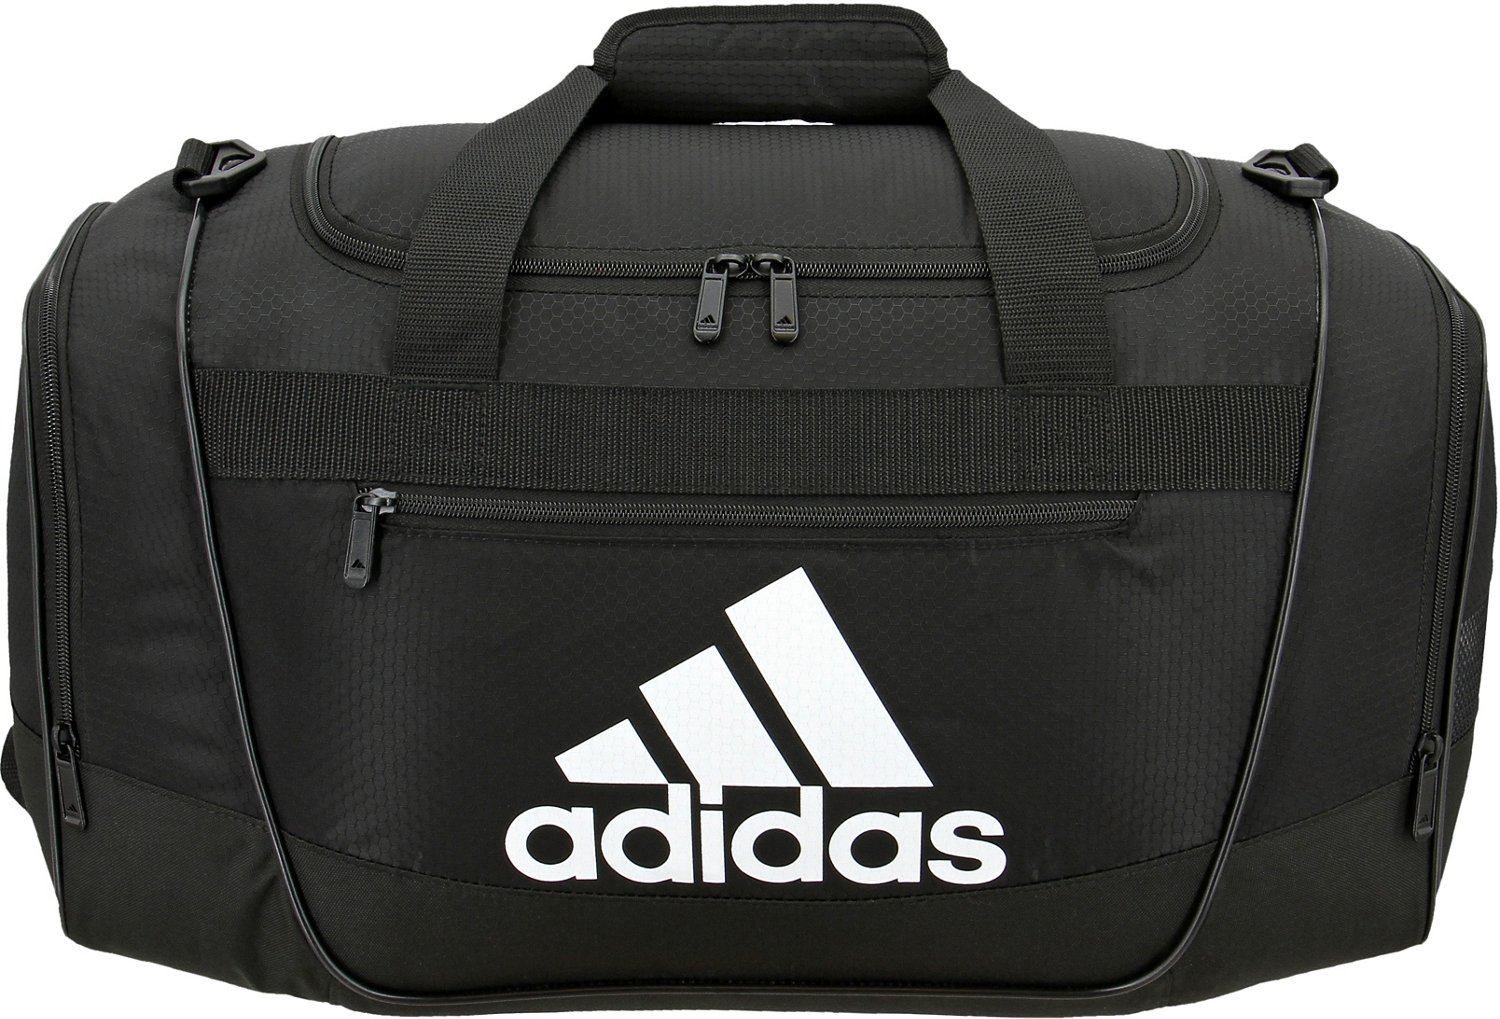 adidas Defender Small Duffel Bag | Academy